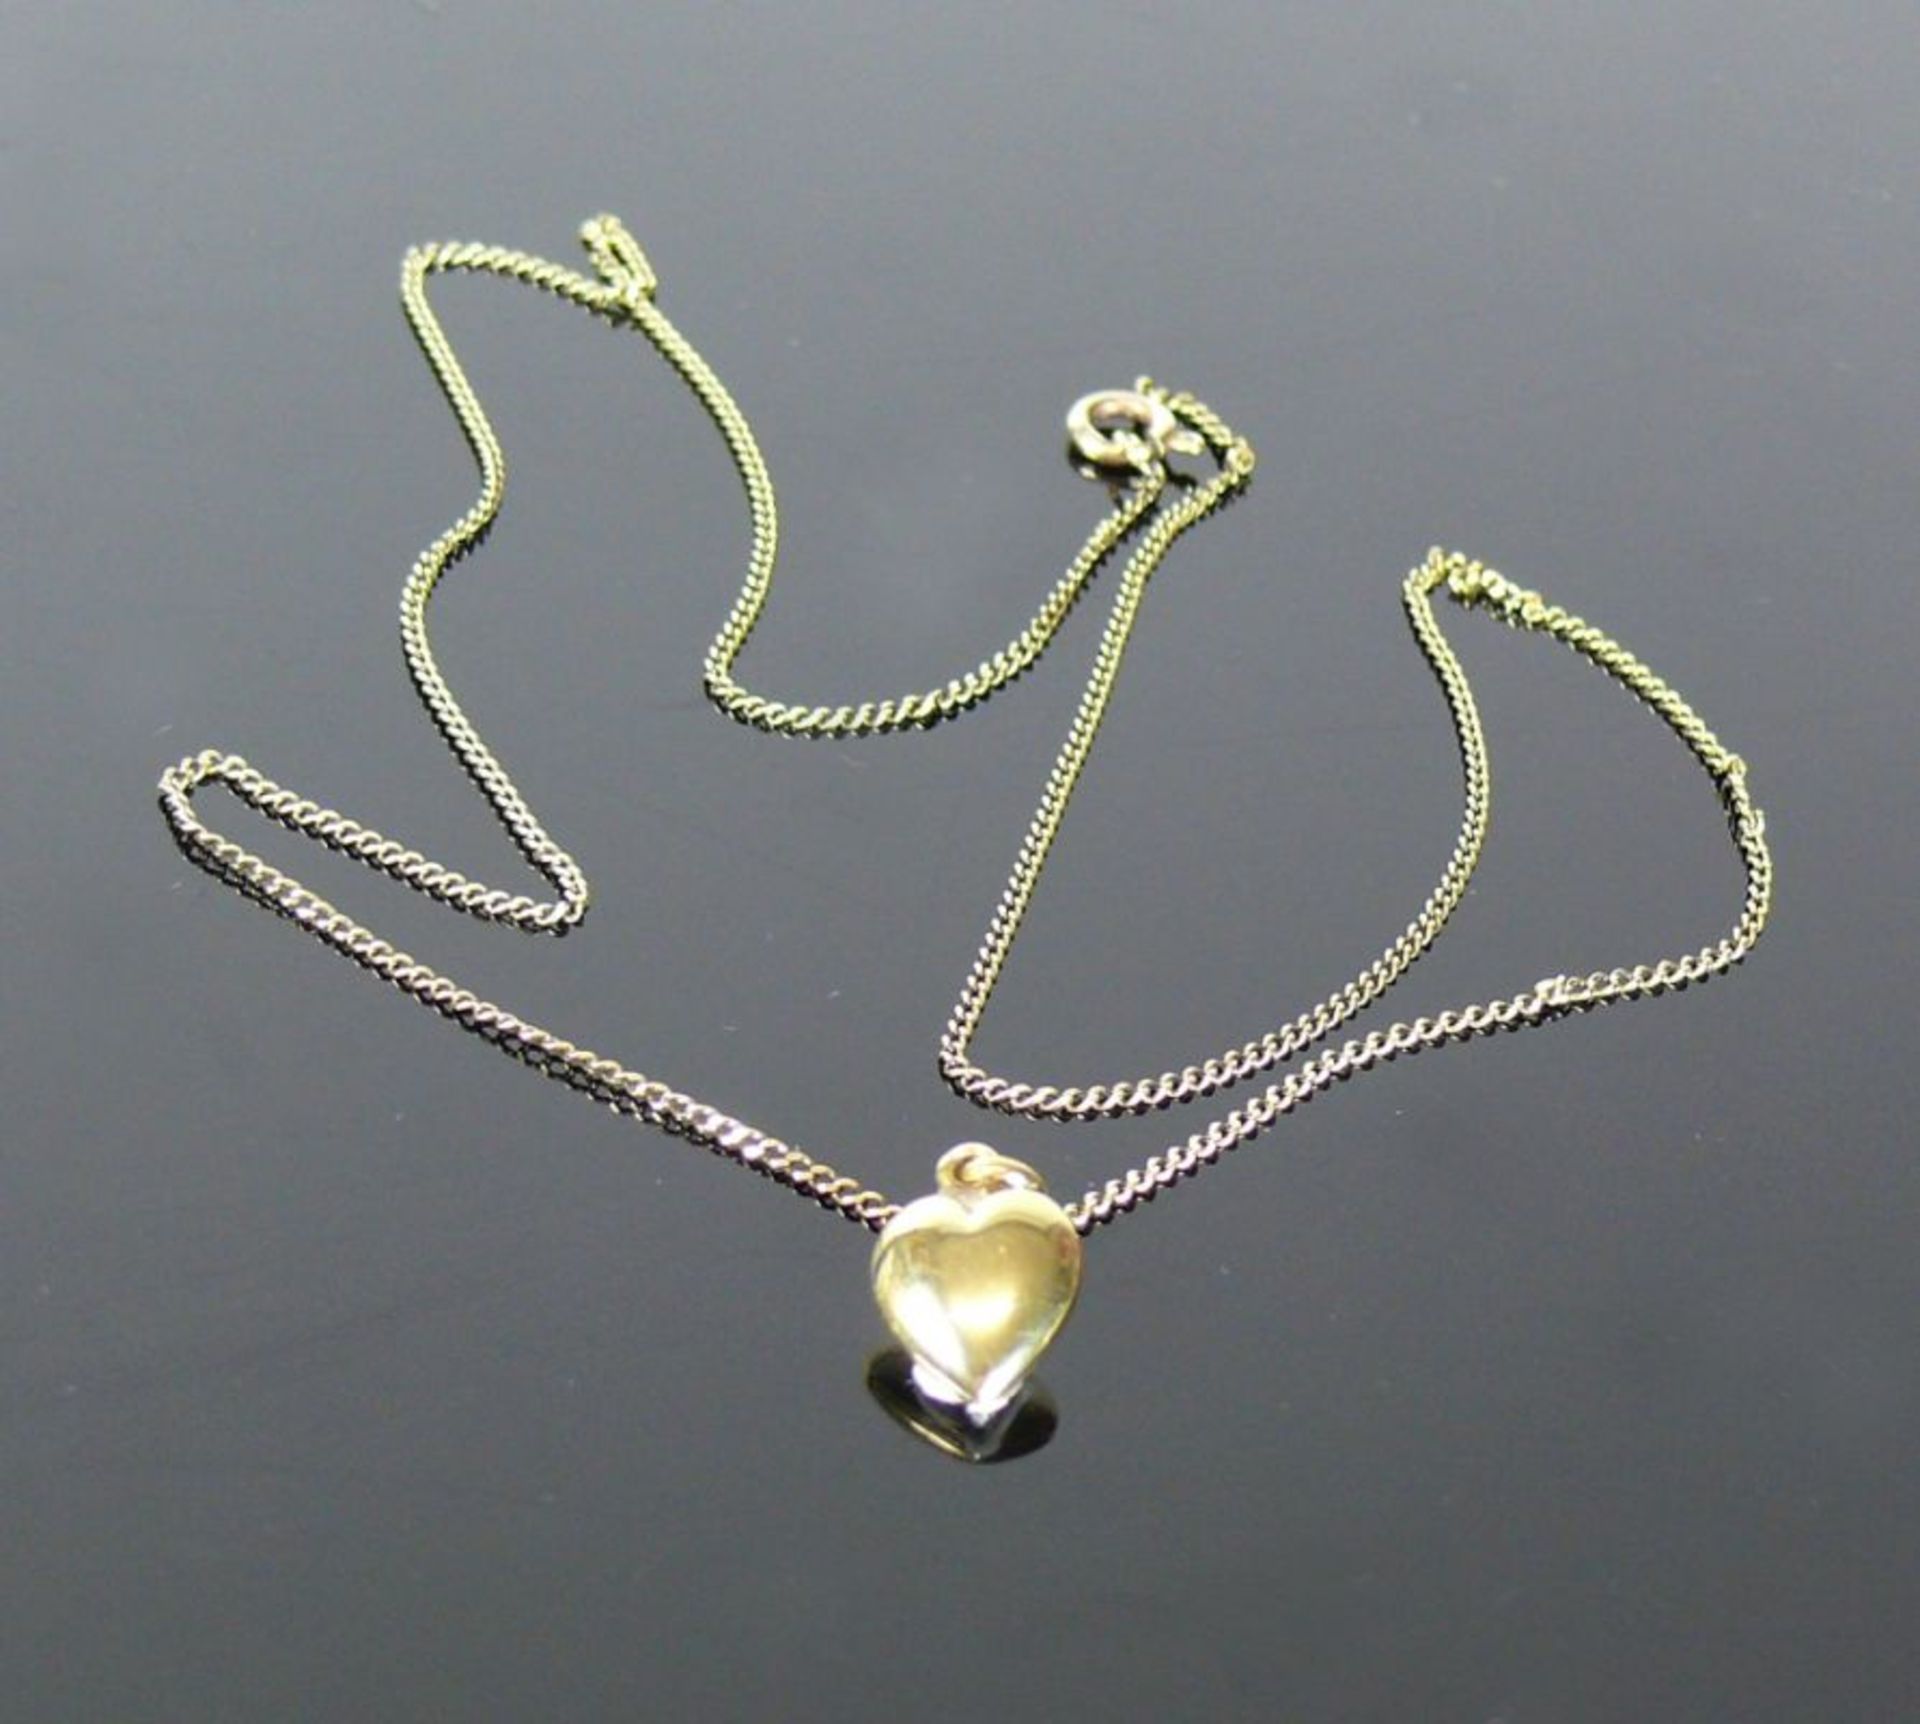 Halskette mit HerzanhängerKette und Anhänger in 14ct GG; zus. 3,5g; L: ca. 52 cm - Bild 2 aus 2